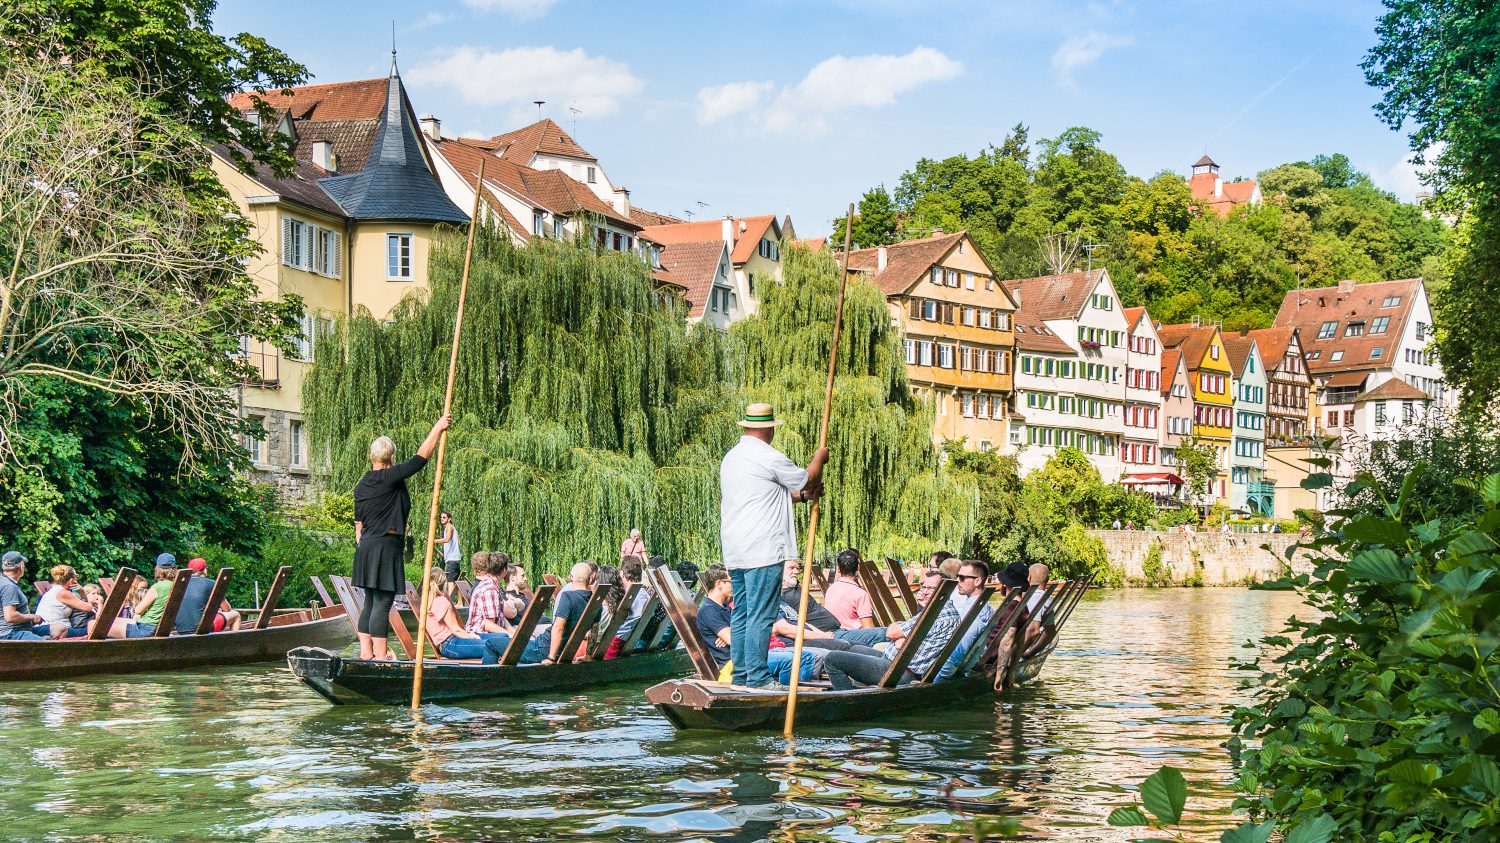 Baden-Württemberg ist bekannt für Stocherkähne - auf dem Bild mit Passagieren auf dem Fluss Neckar